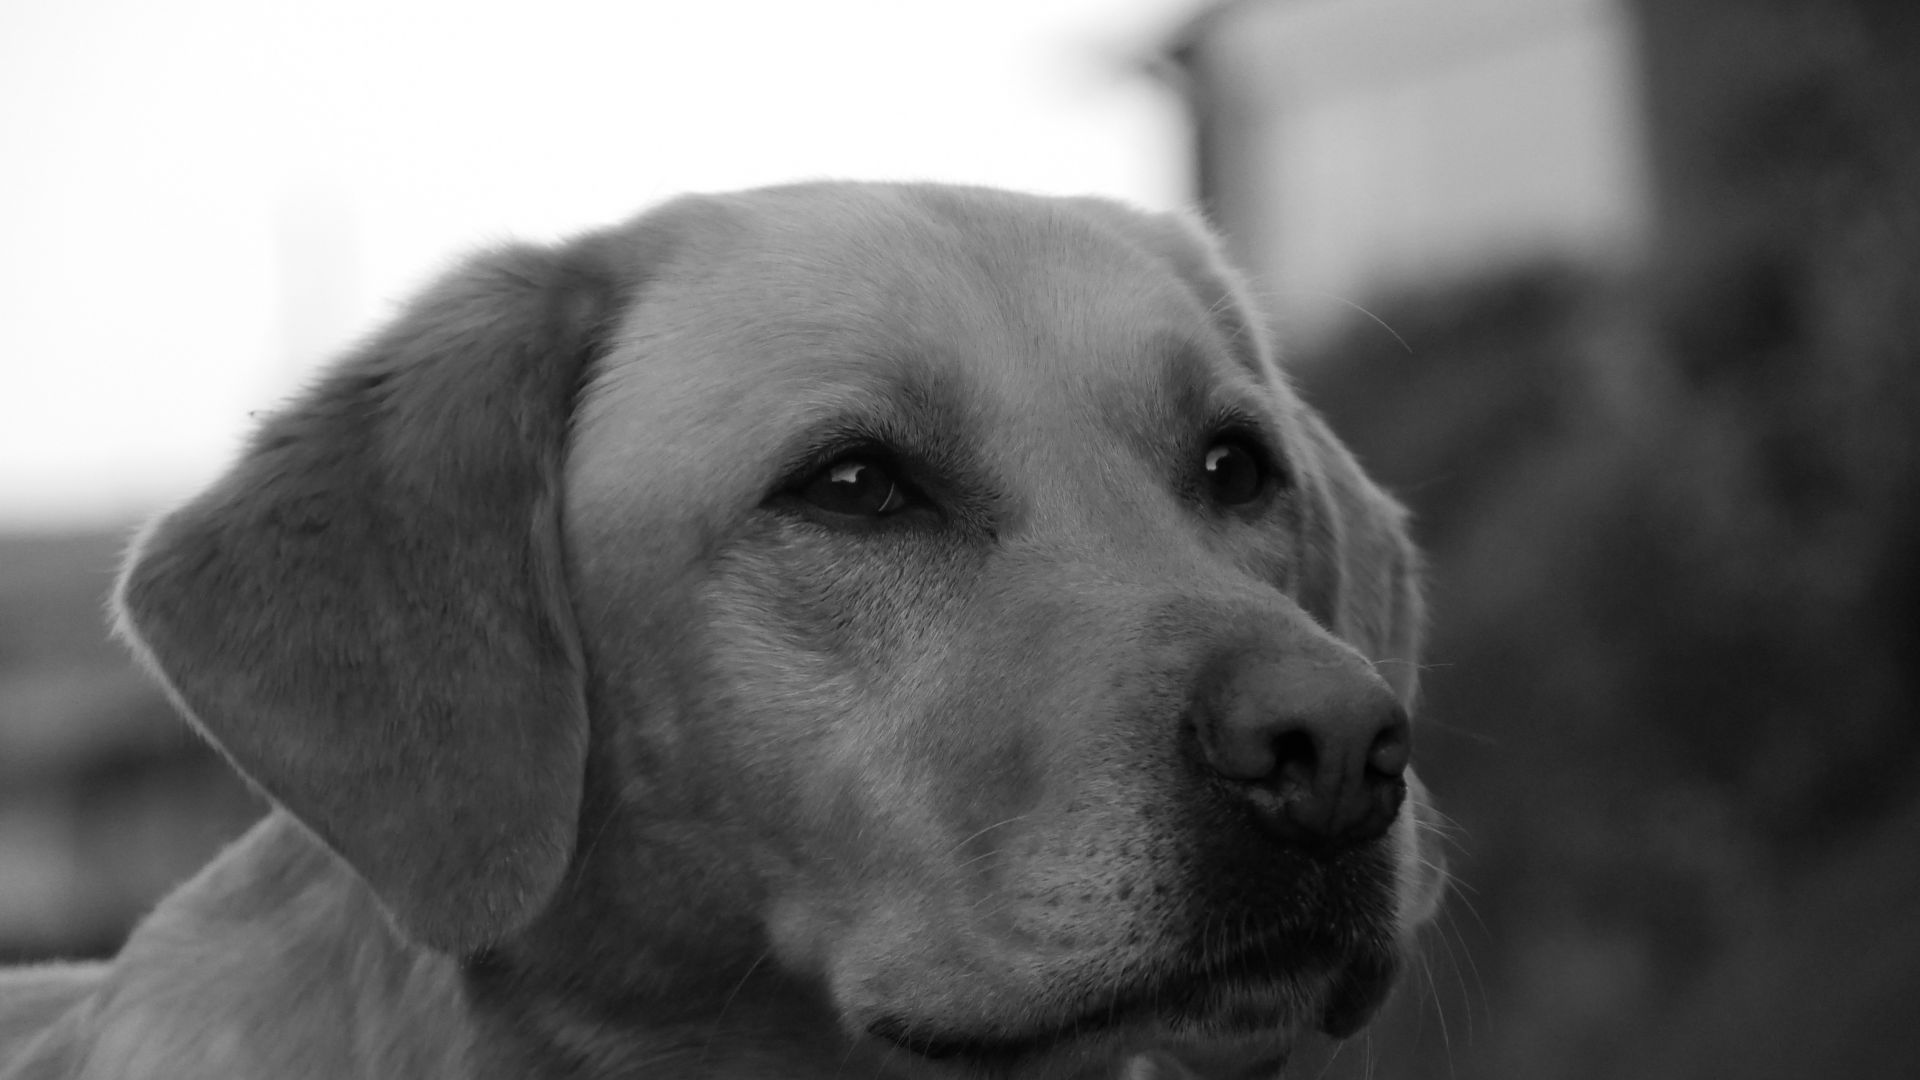 Wallpaper Dog, Golden Retriever, calm, monochrome